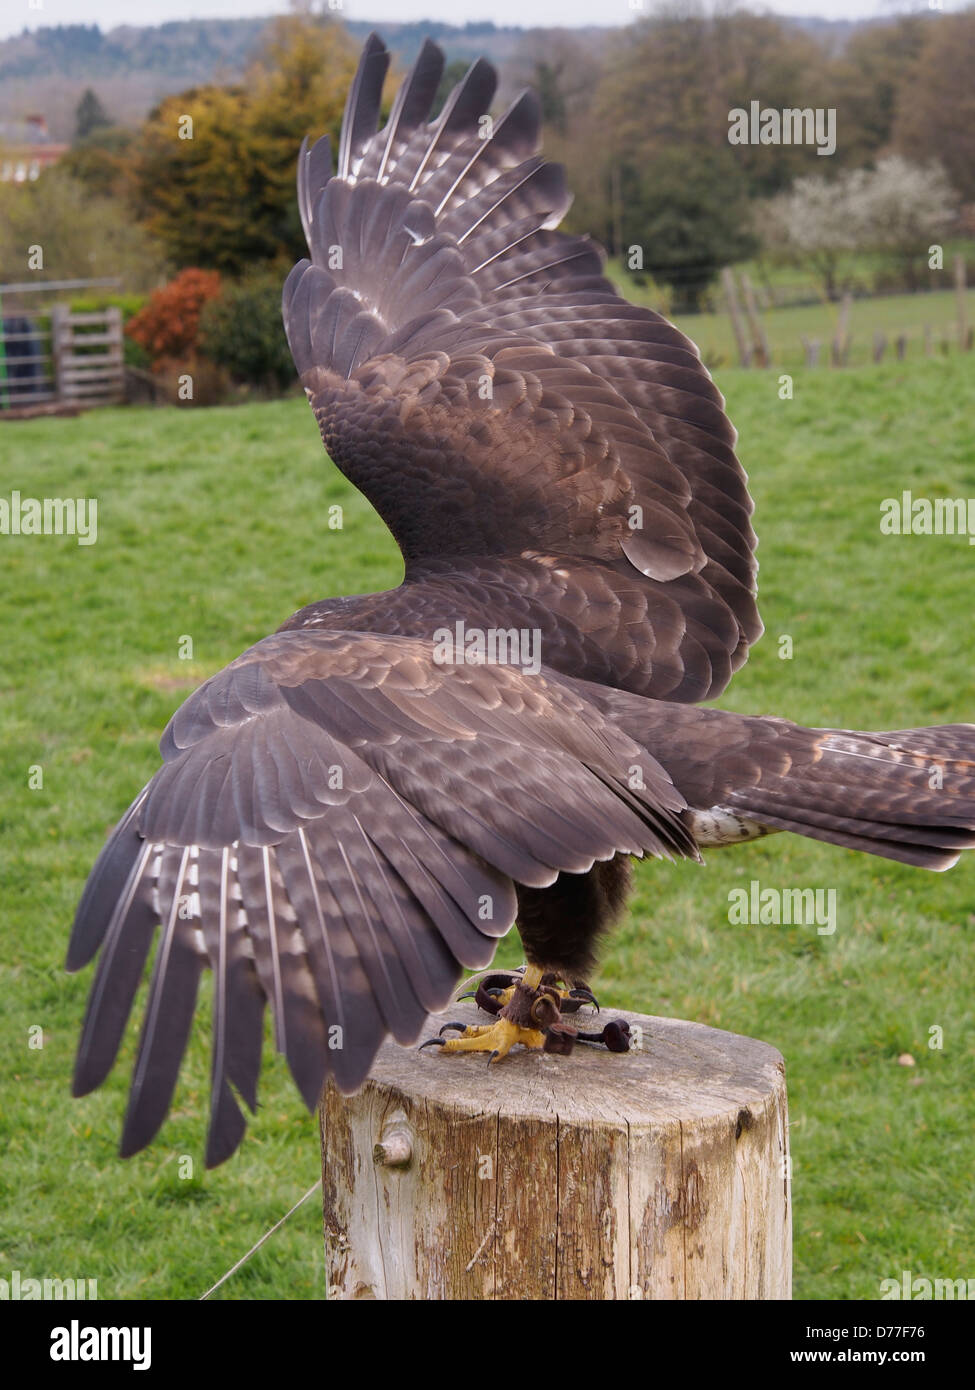 Falconry sanctuary flying hawks Stock Photo